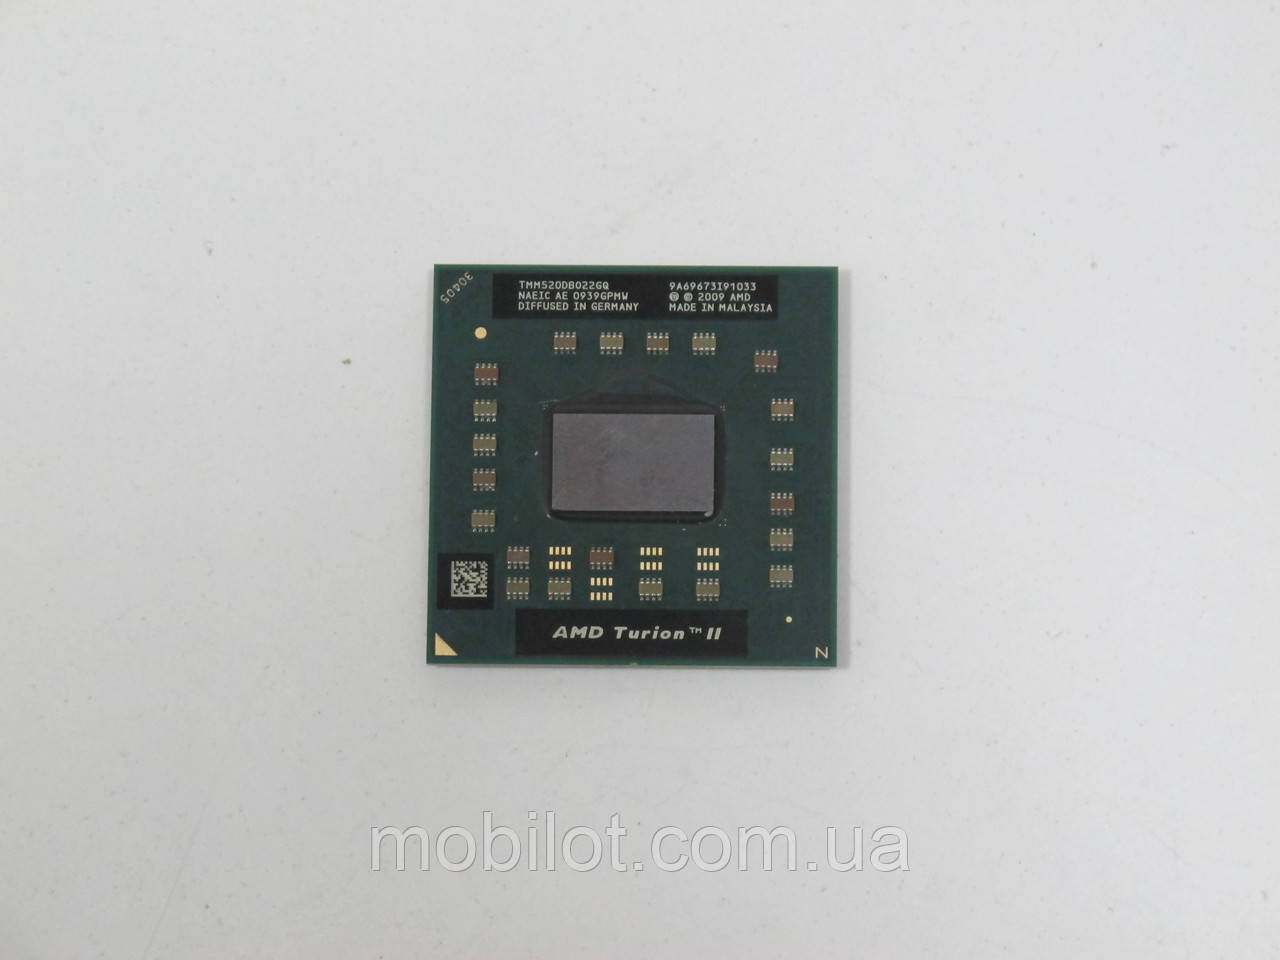 Процессор AMD Turion II Dual-Core Mobile M520 (NZ-4733)Нет в наличии